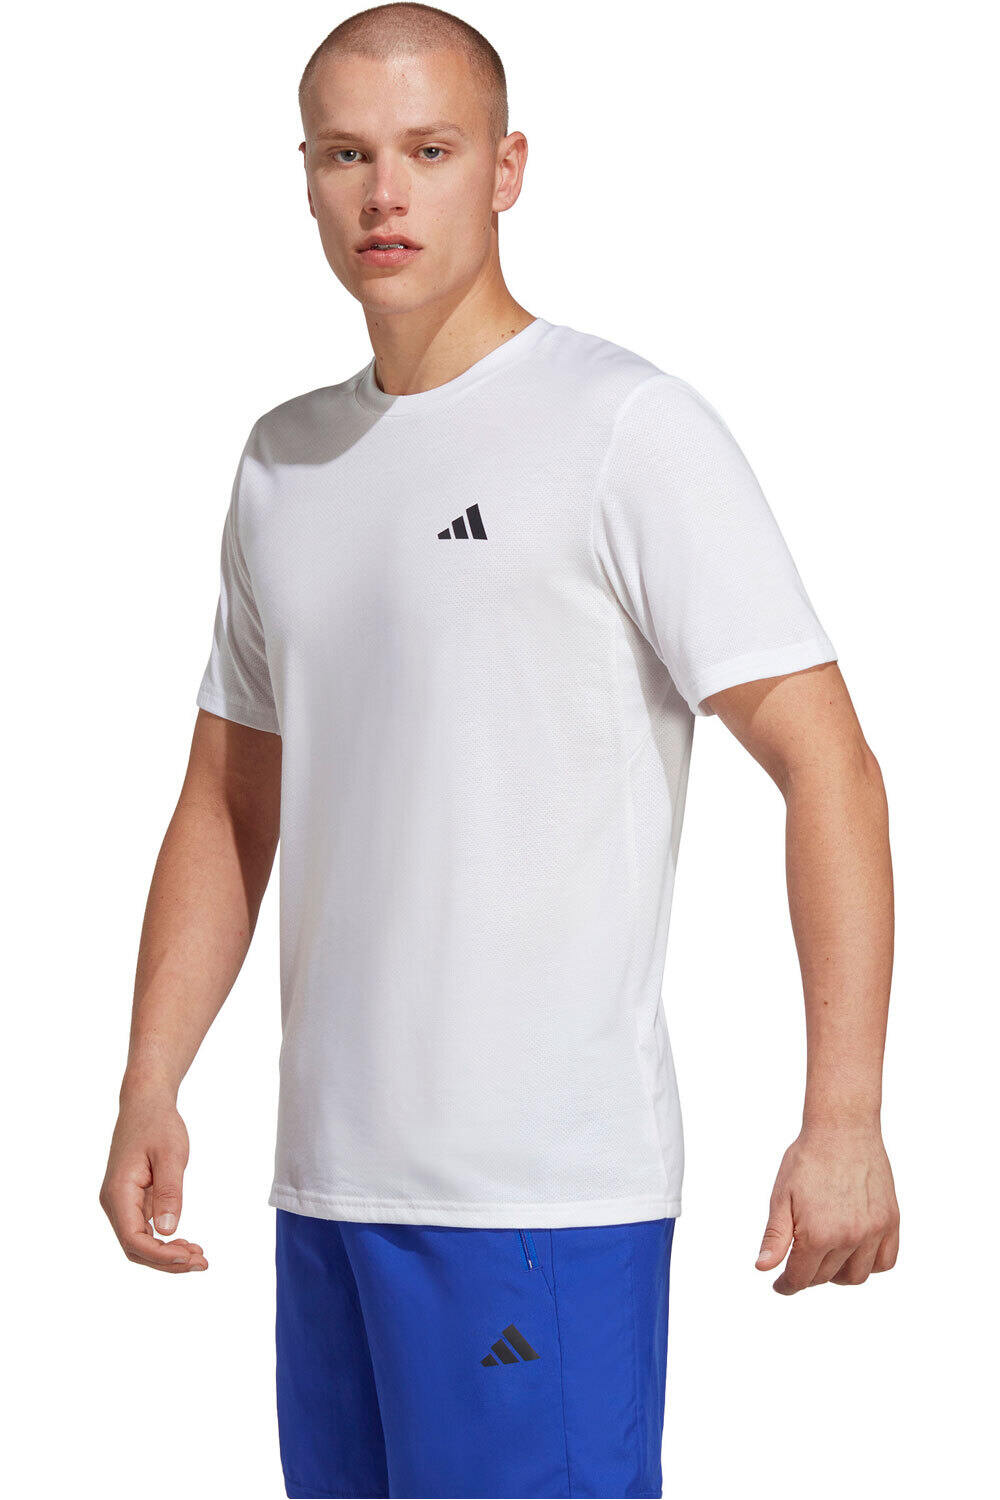 adidas camiseta fitness hombre TR-ES COMF TEE vista frontal